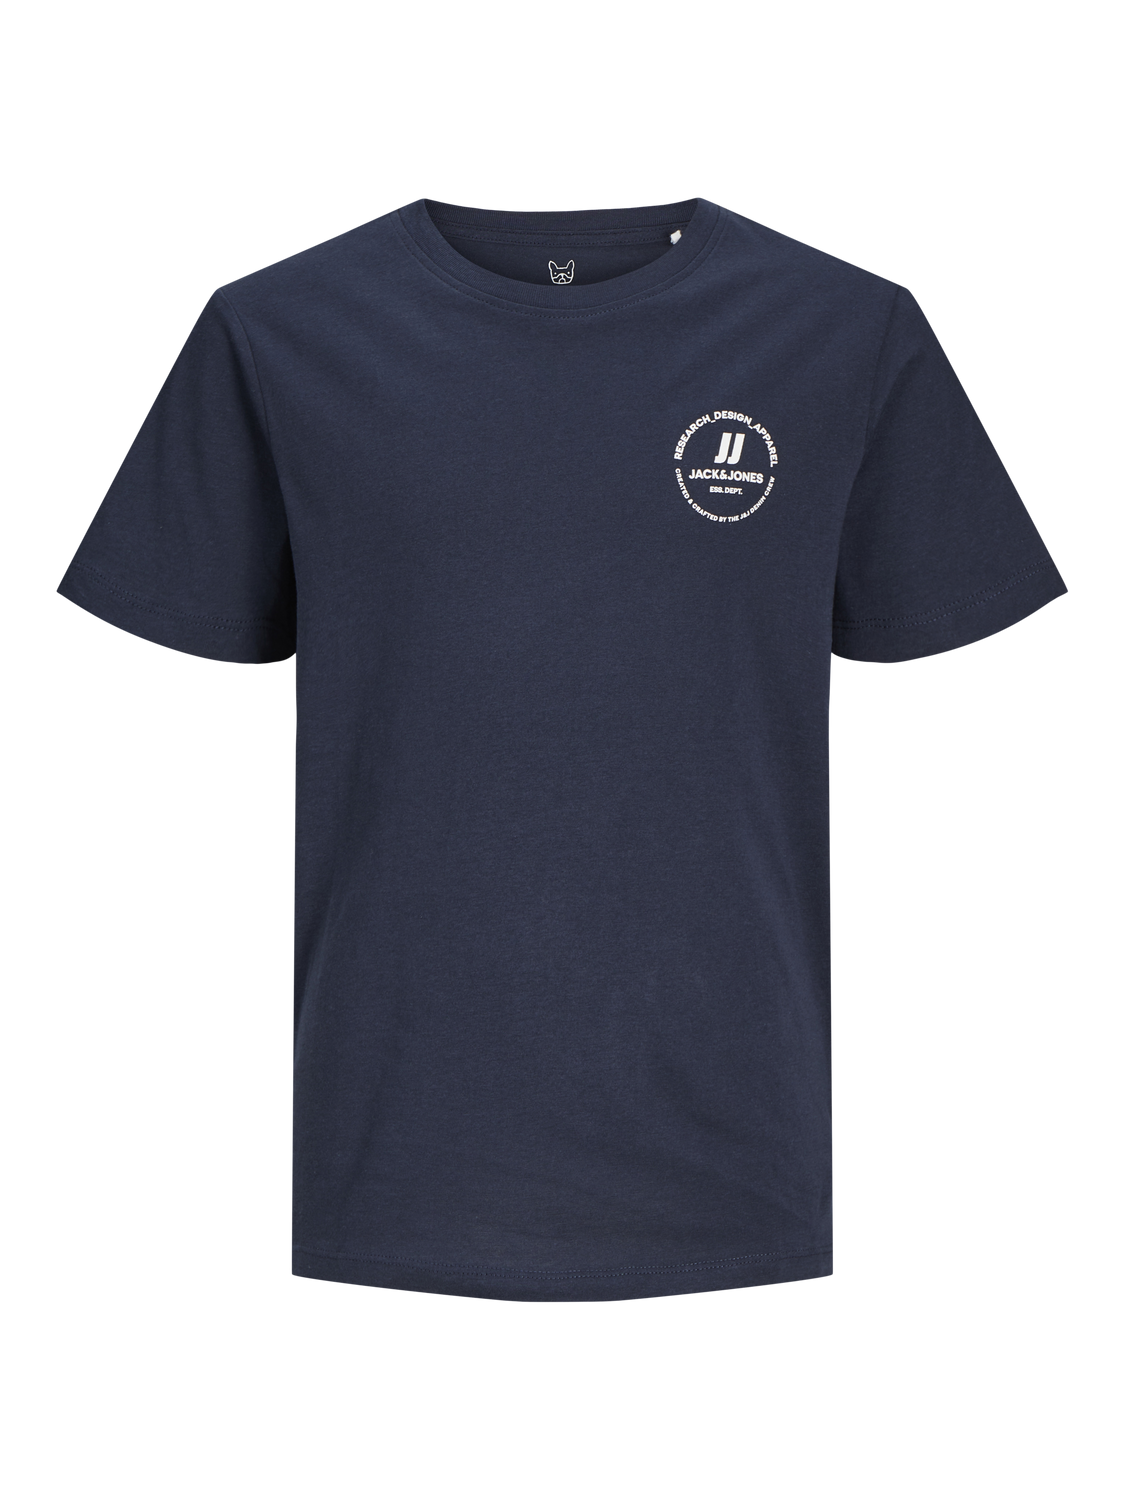 Jack & Jones T-shirt Imprimé Mini -Navy Blazer - 12259964